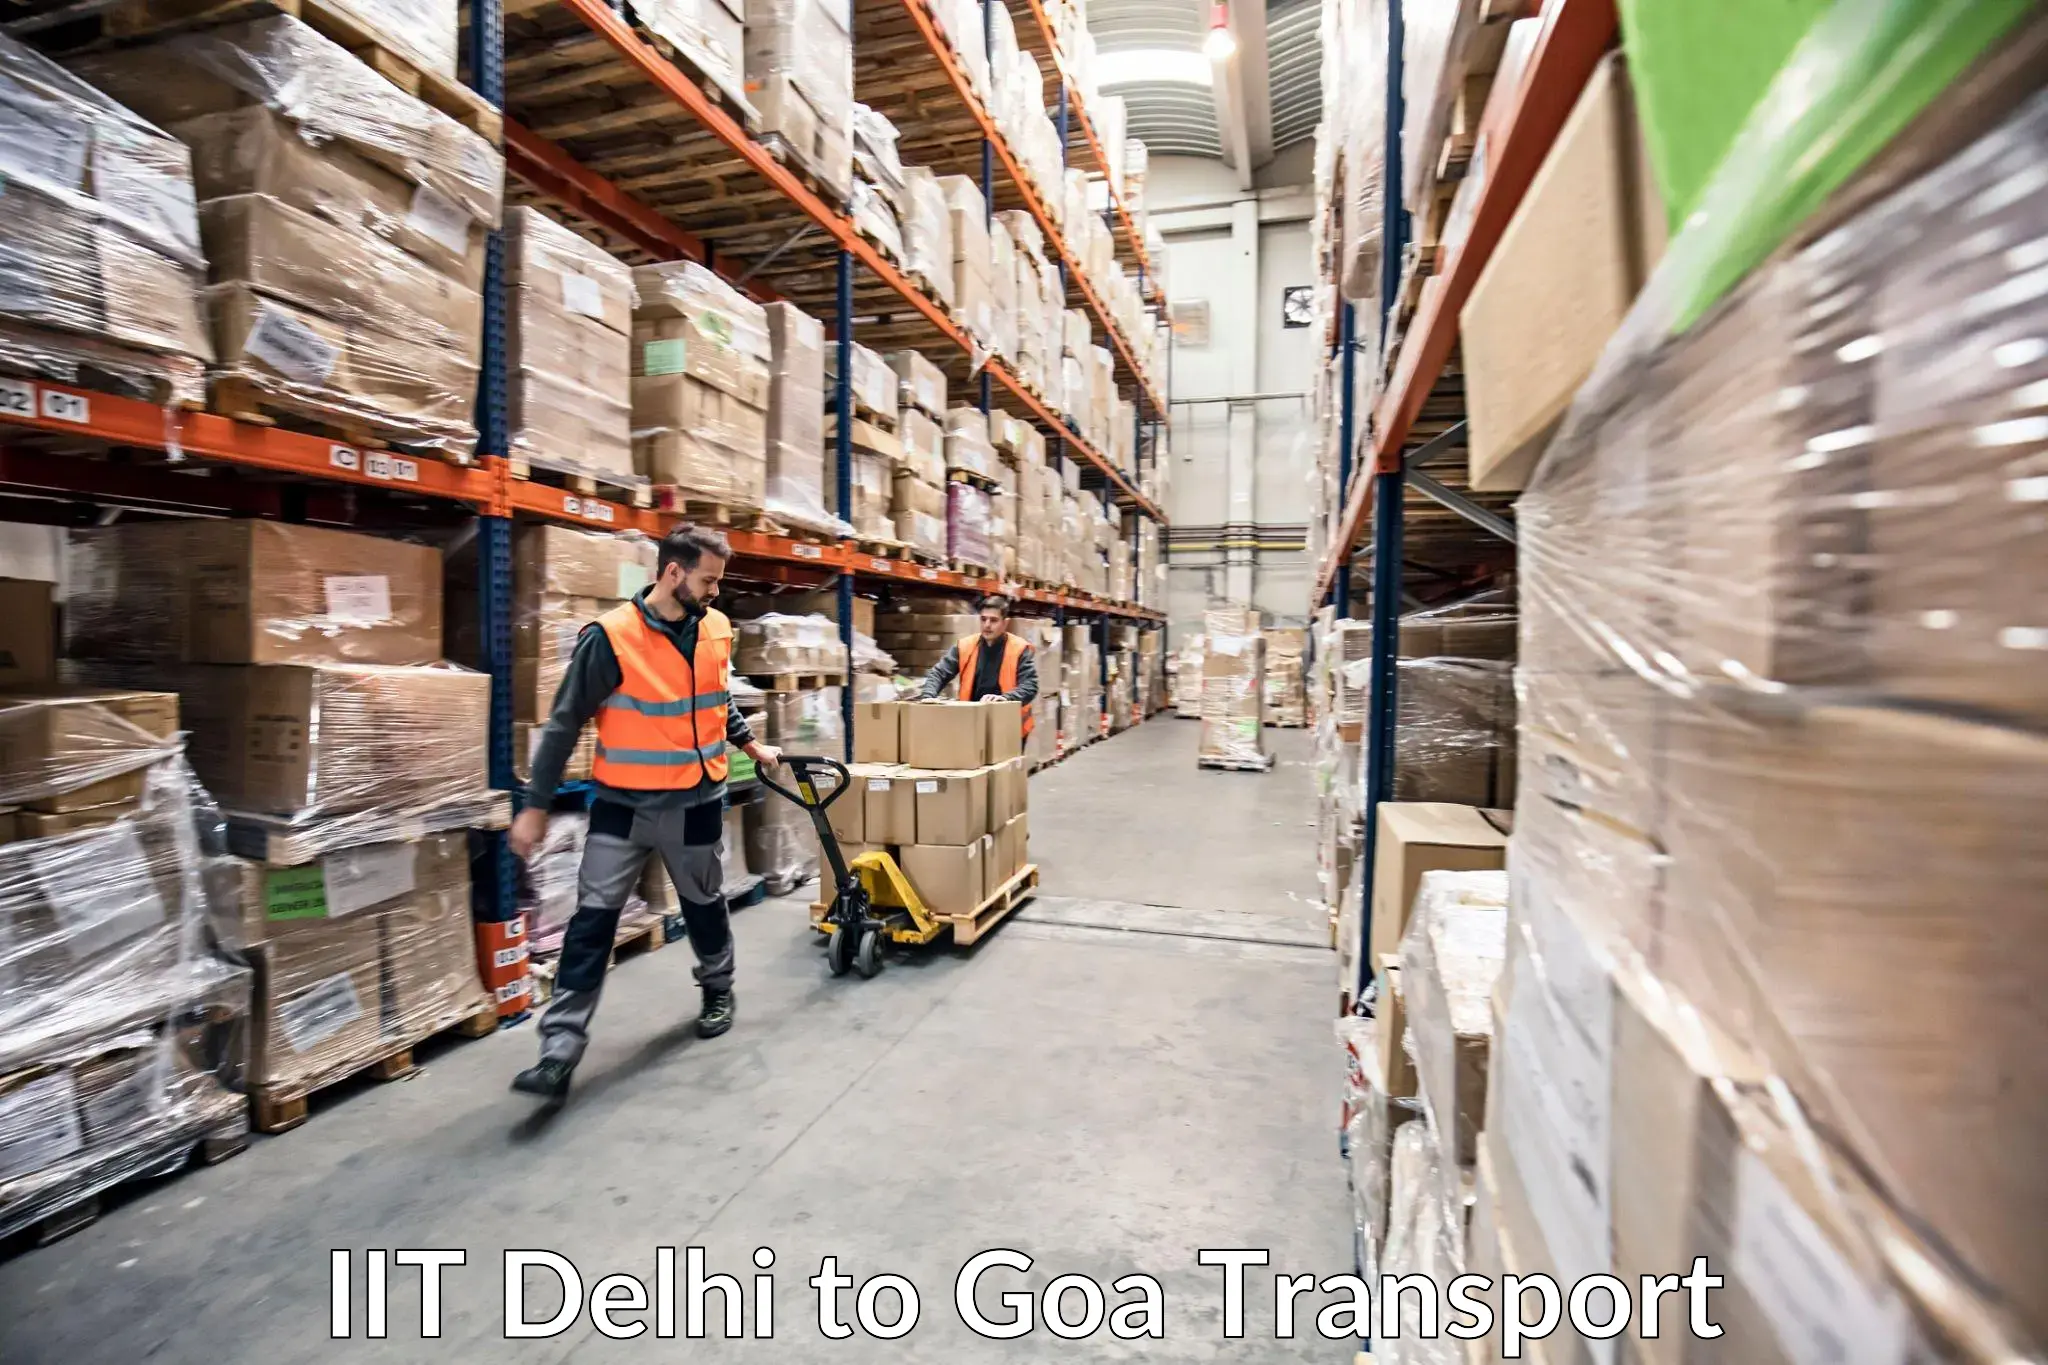 Delivery service IIT Delhi to Goa